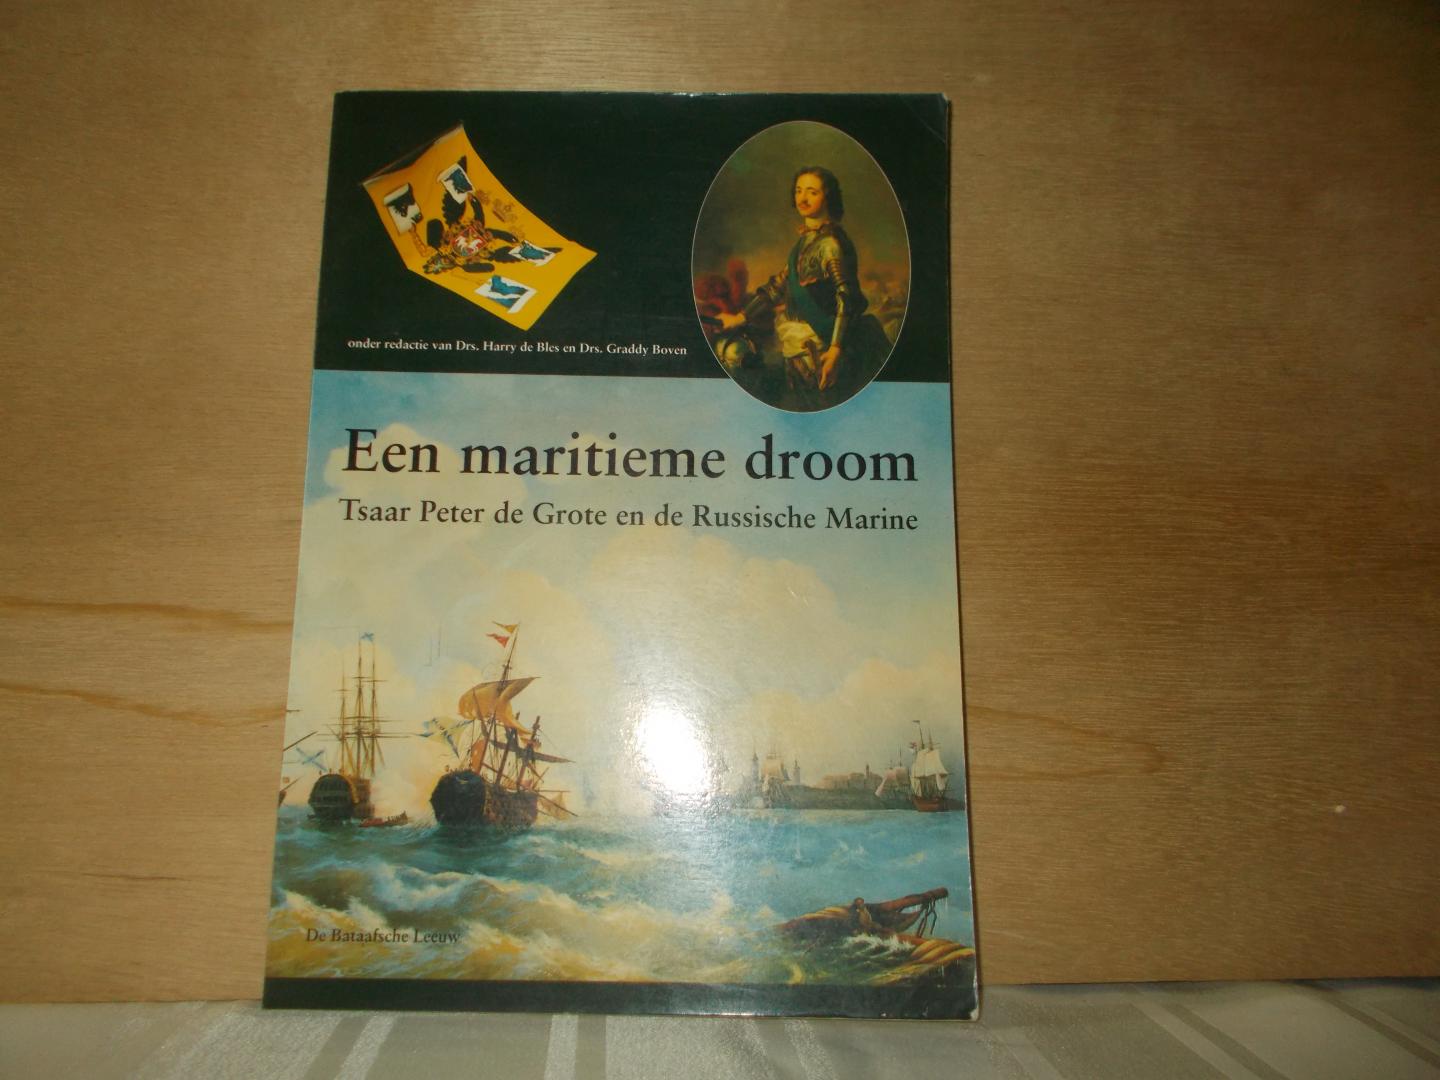 Bles, Harry de / Boven, Graddy ( eindredactie ) - Een maritieme droom tsaar Peter de Grote en de Russische marine